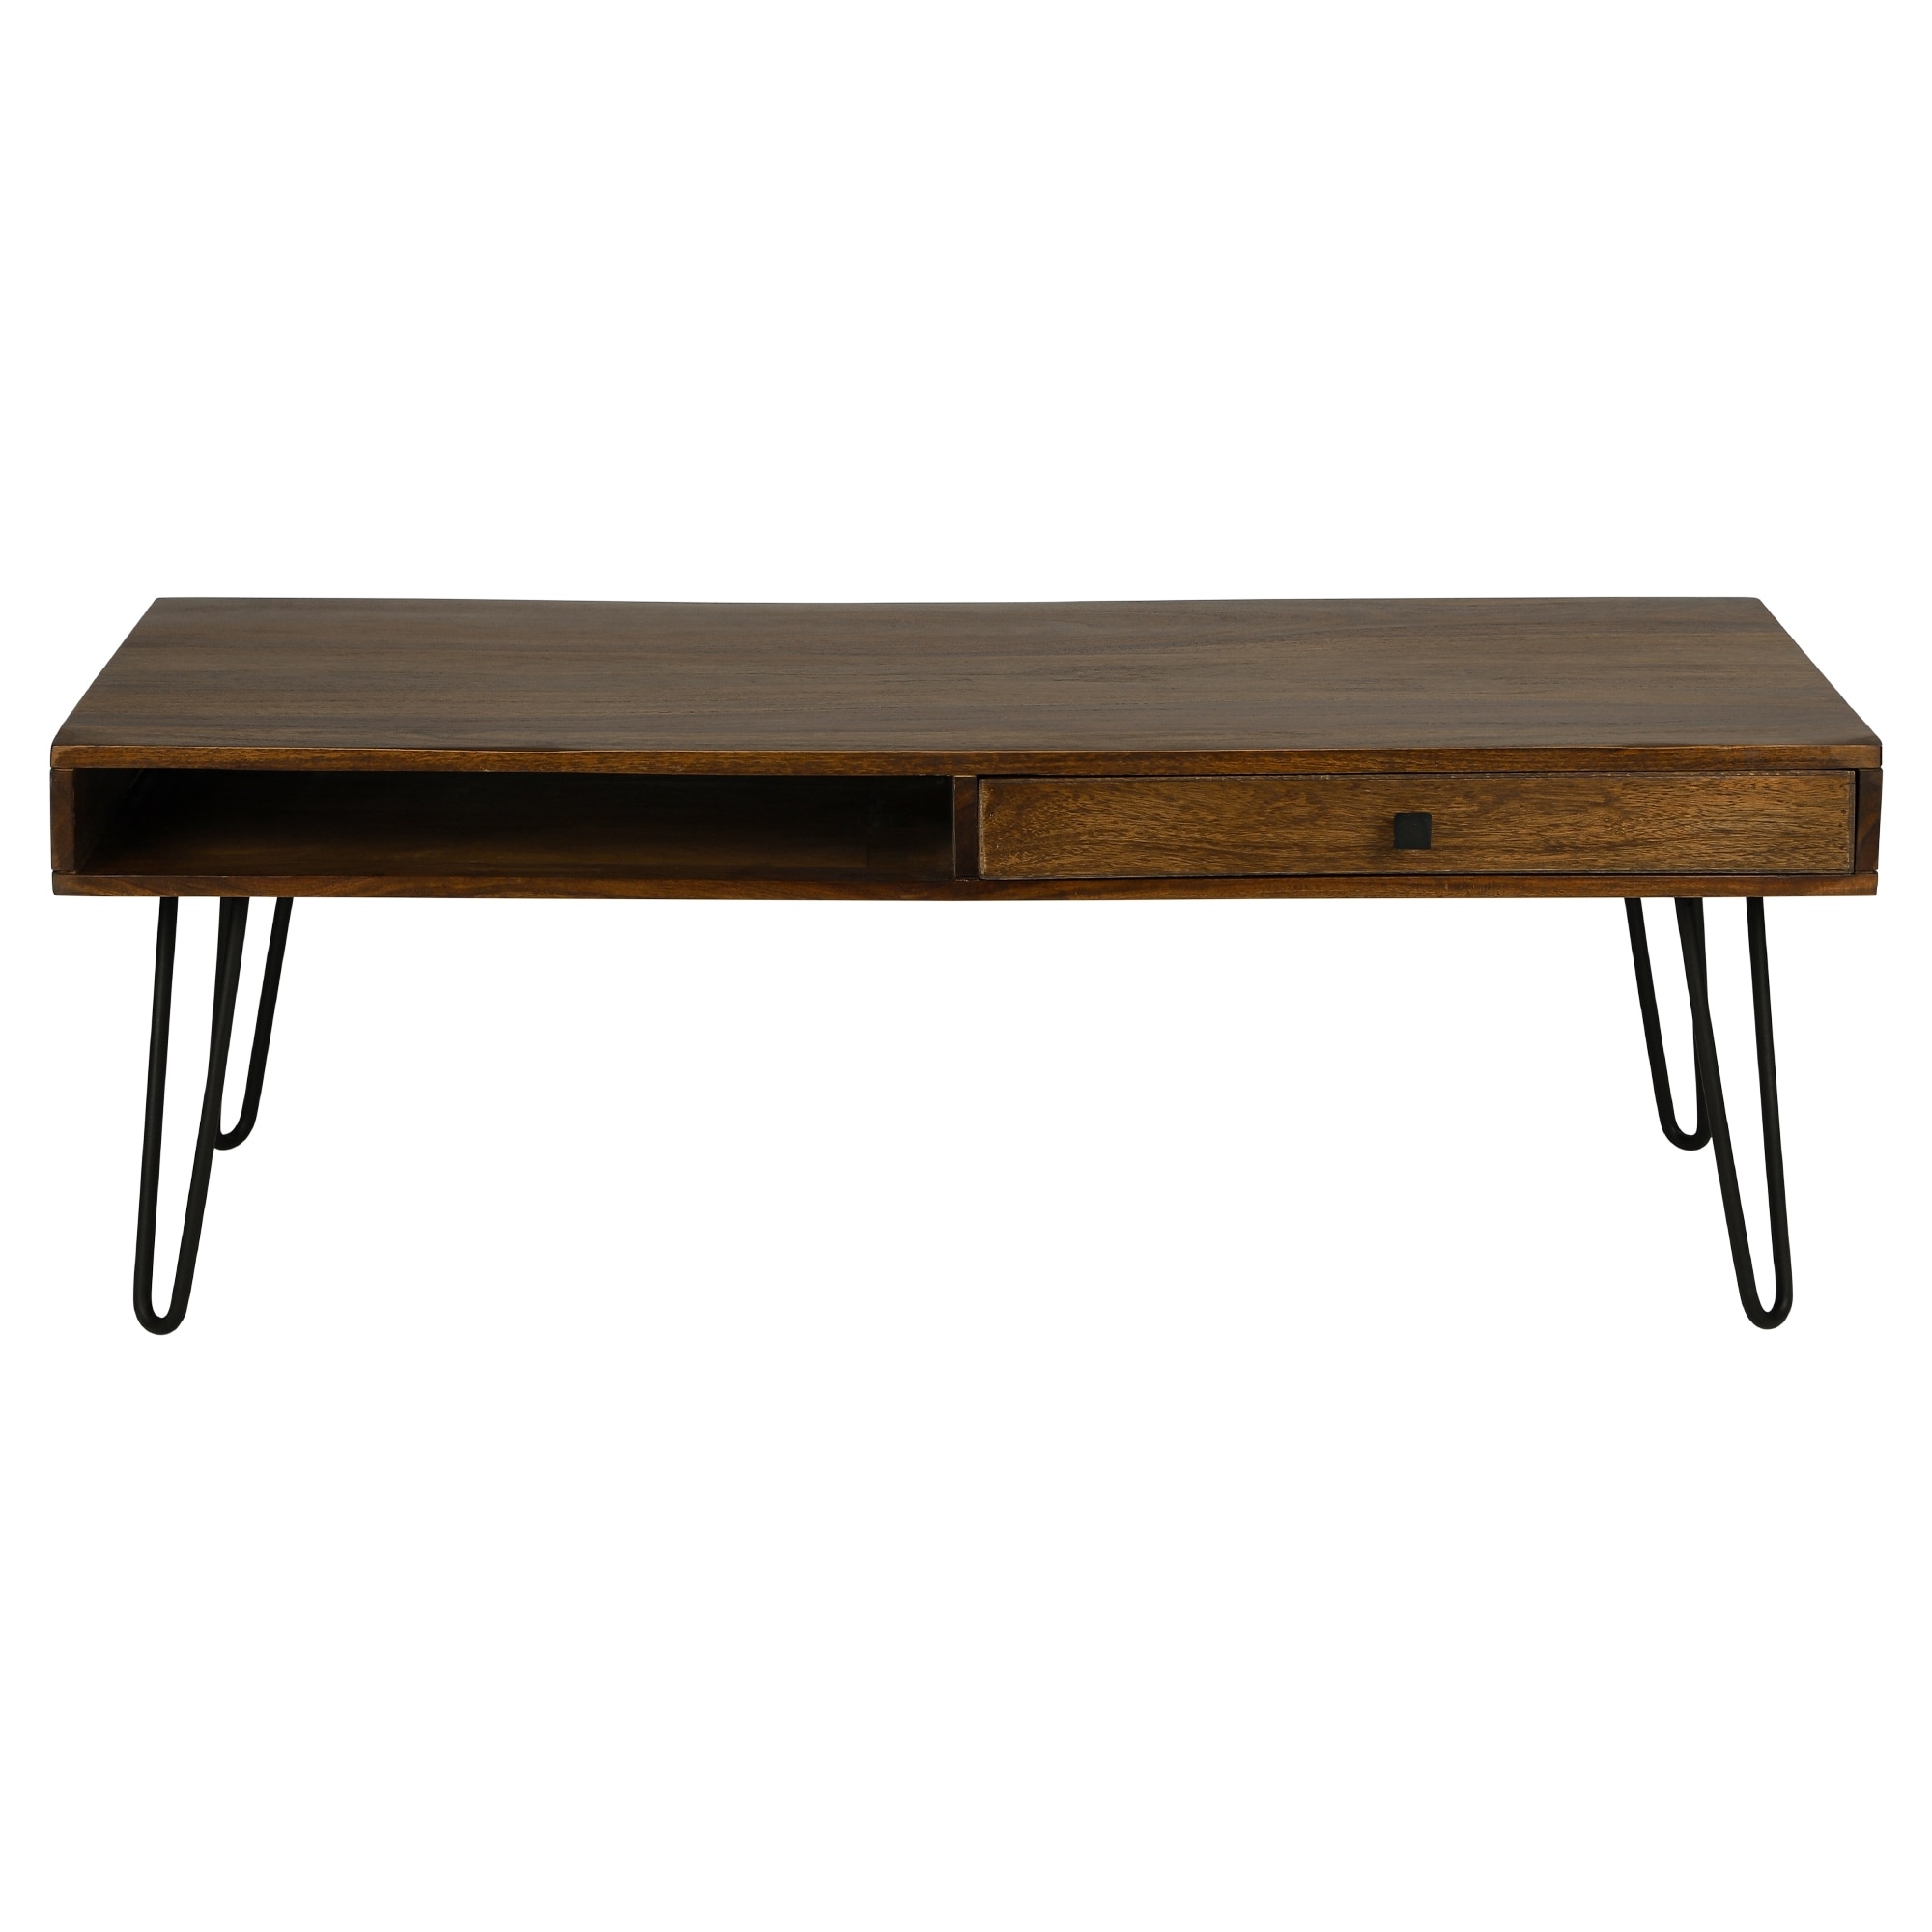 Womo-Design Sofabord Padua med 1 skuffe, 1 åbent rum og hårnål ben,  120x40x60 | Elgiganten